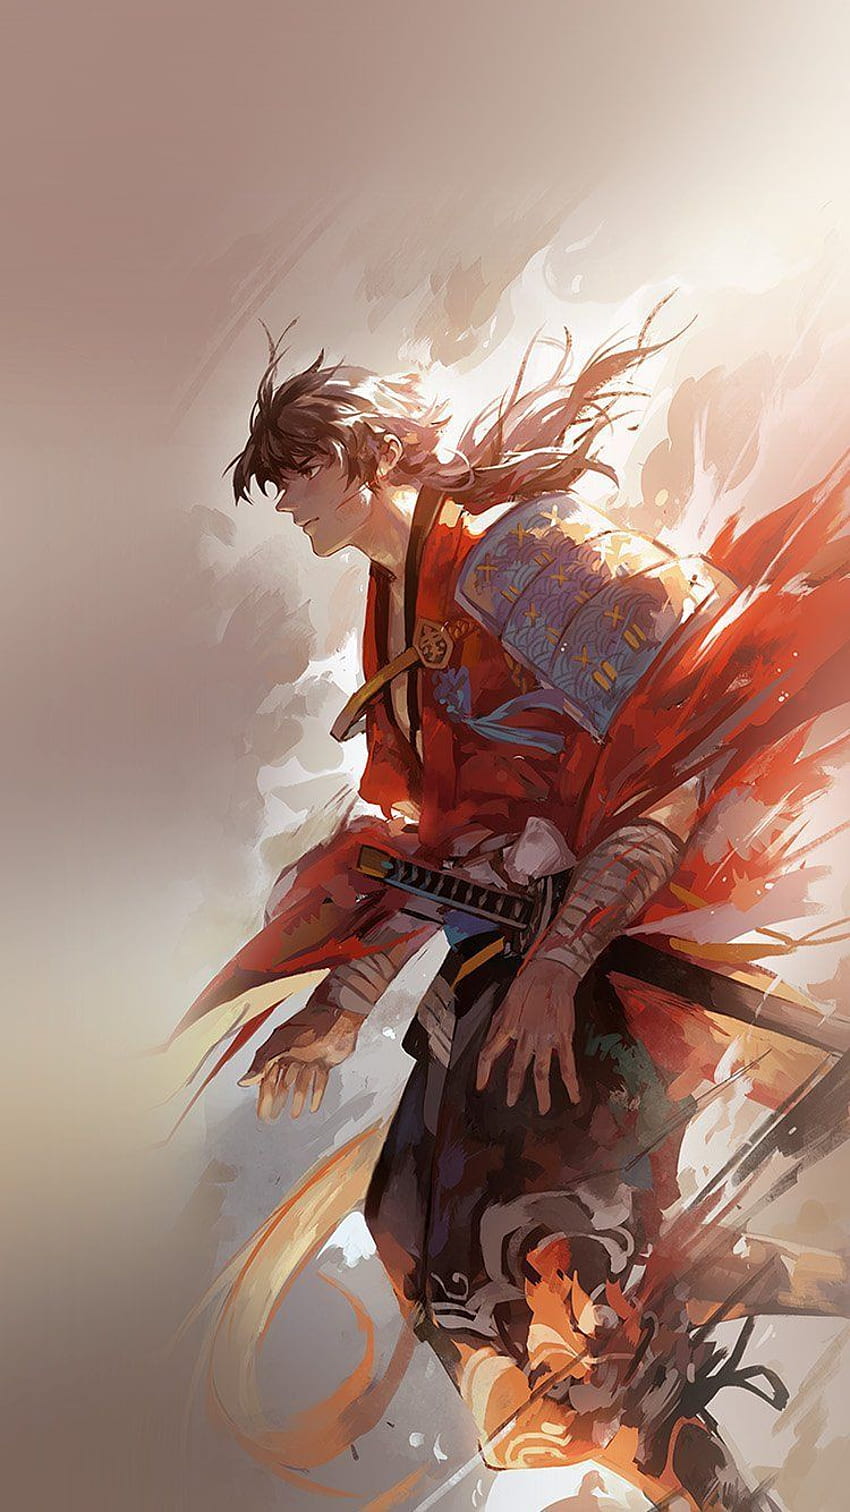 Best Anime Swordsman? - Gen. Discussion - Comic Vine